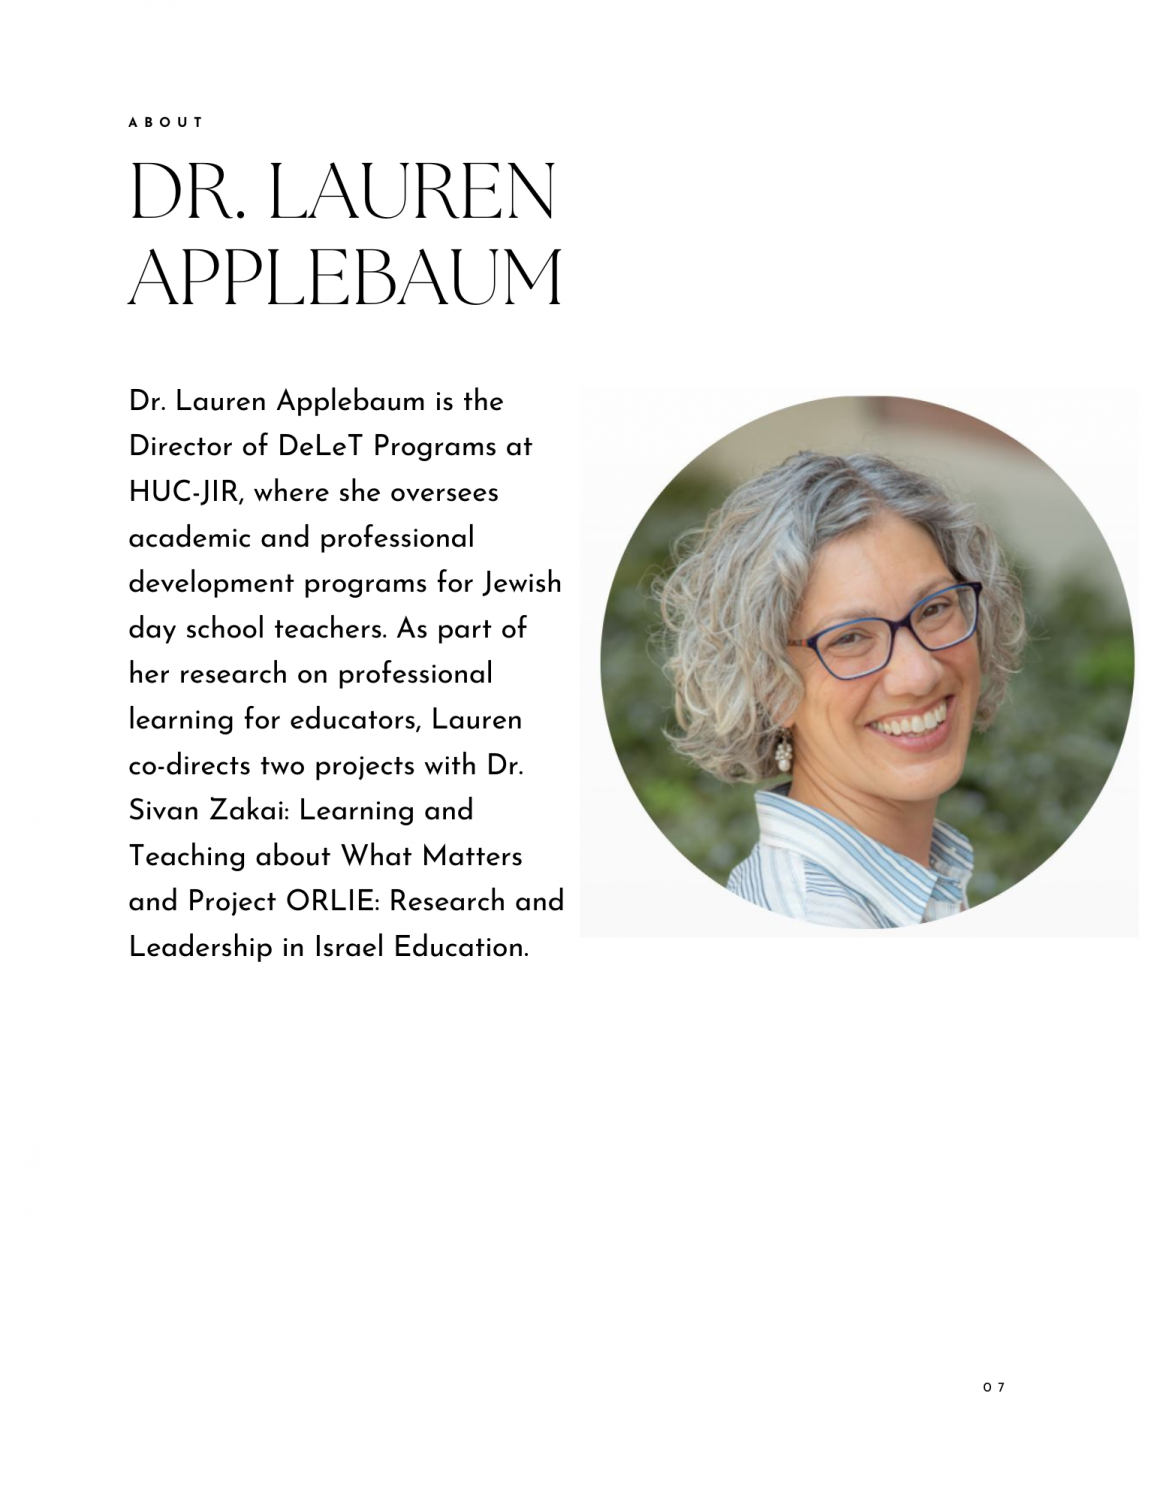 Dr. Lauren Applebaum biography